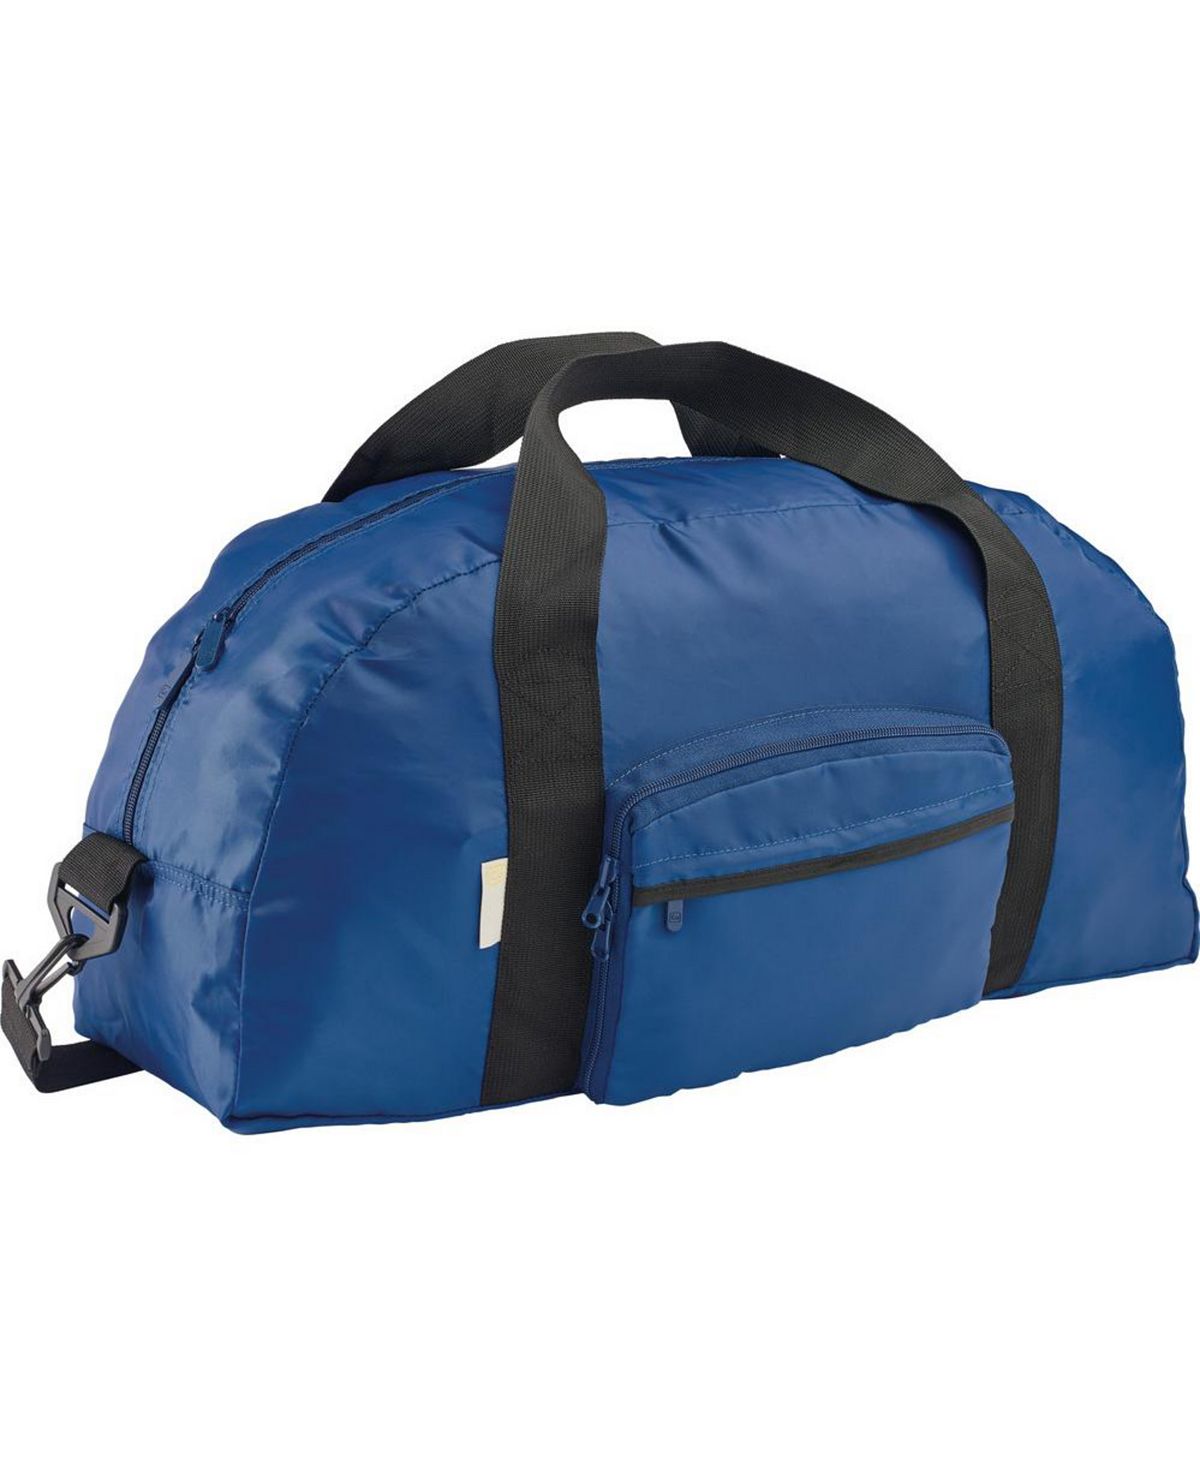 Ультралегкая сумка Go Travel, синий